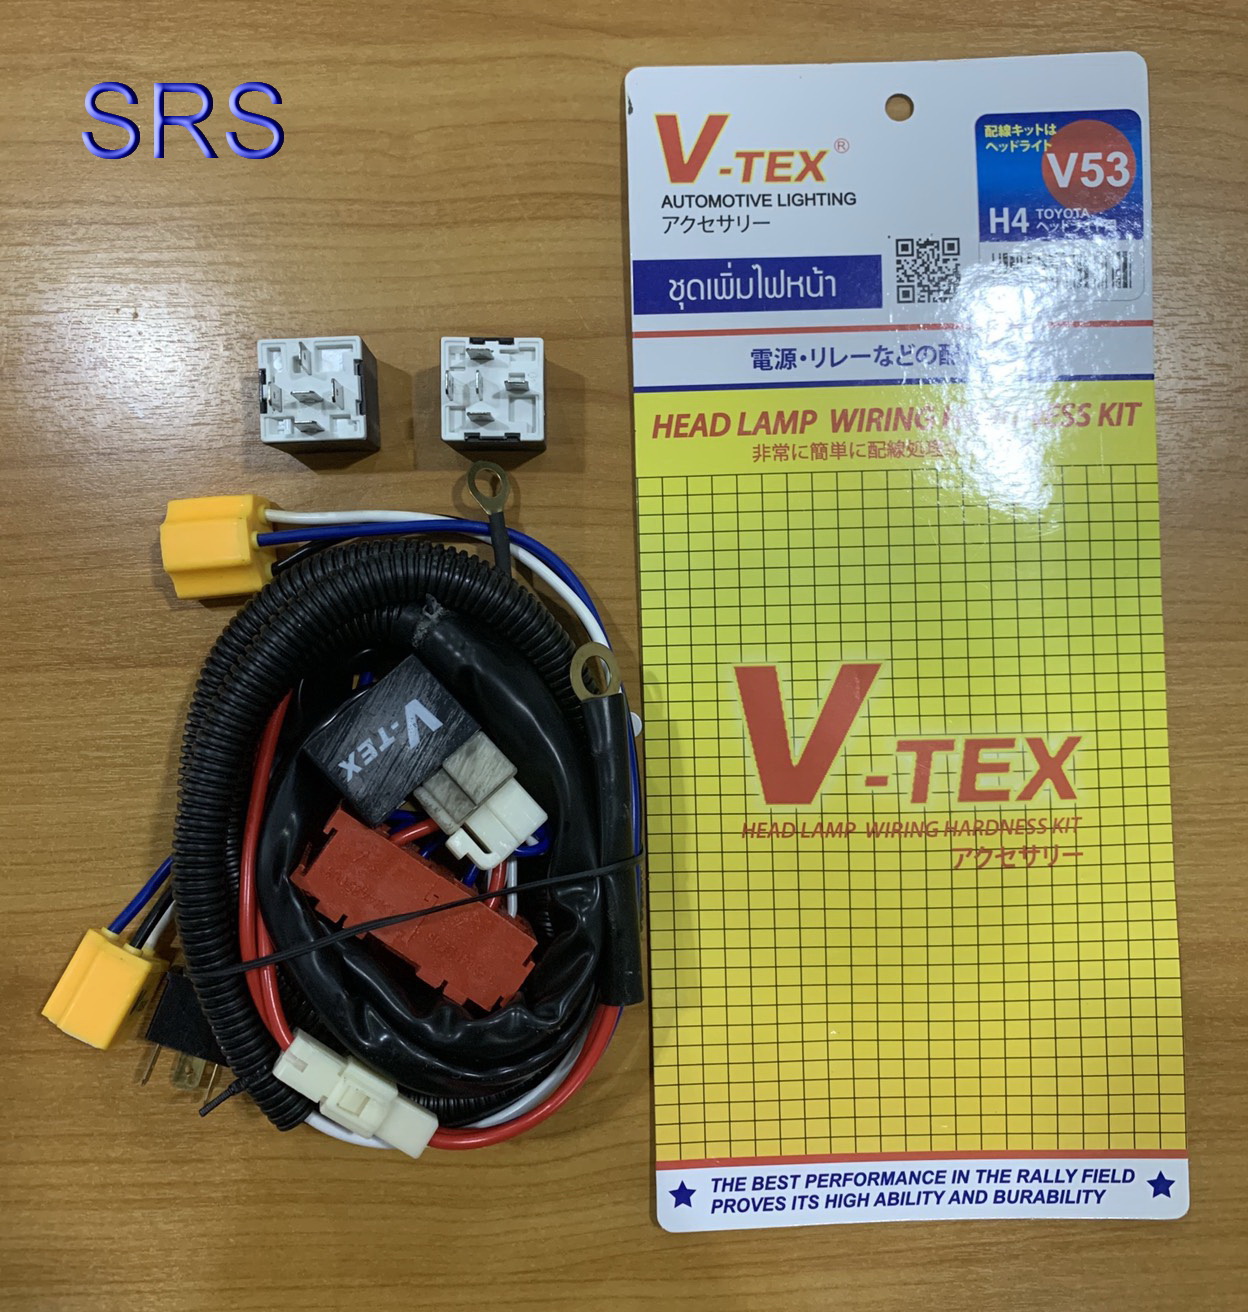 ชุดเพิ่มไฟหน้า V-TEX รุ่น H4 TOYOTA (V53)